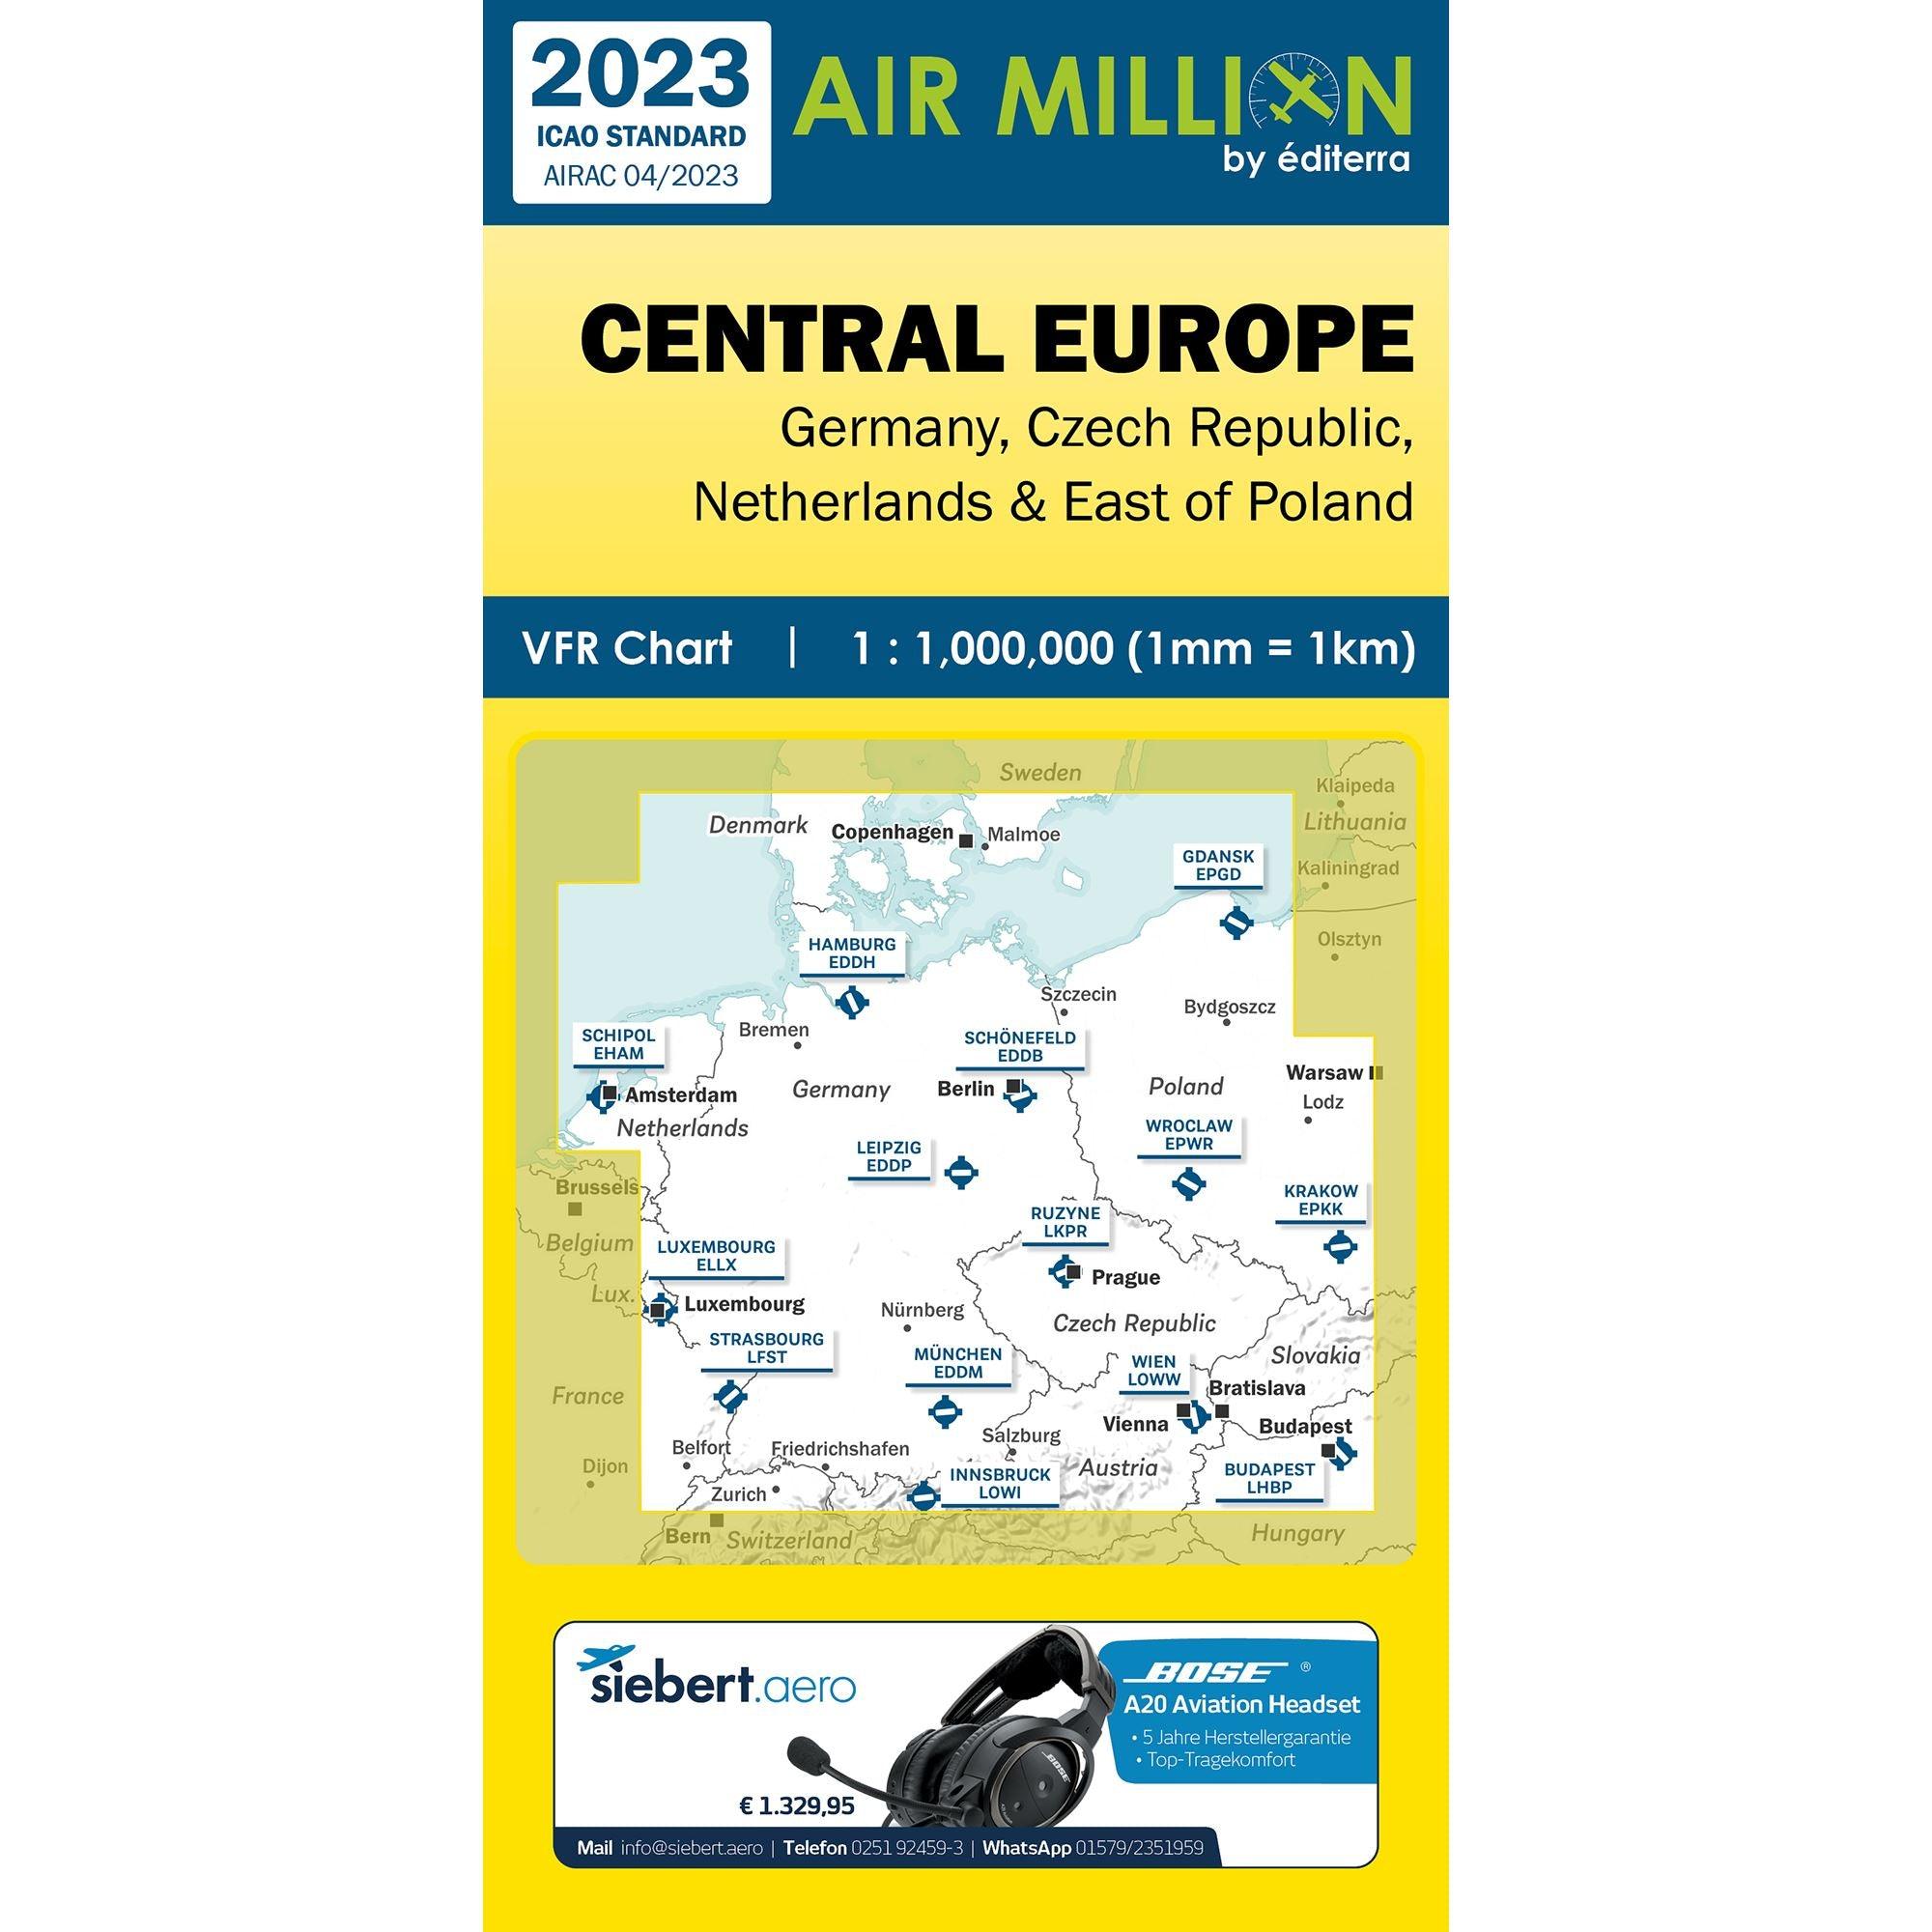 CARTE AIR MILLION EUROPE CENTRALE 2023 Cartes Air Million Editerra